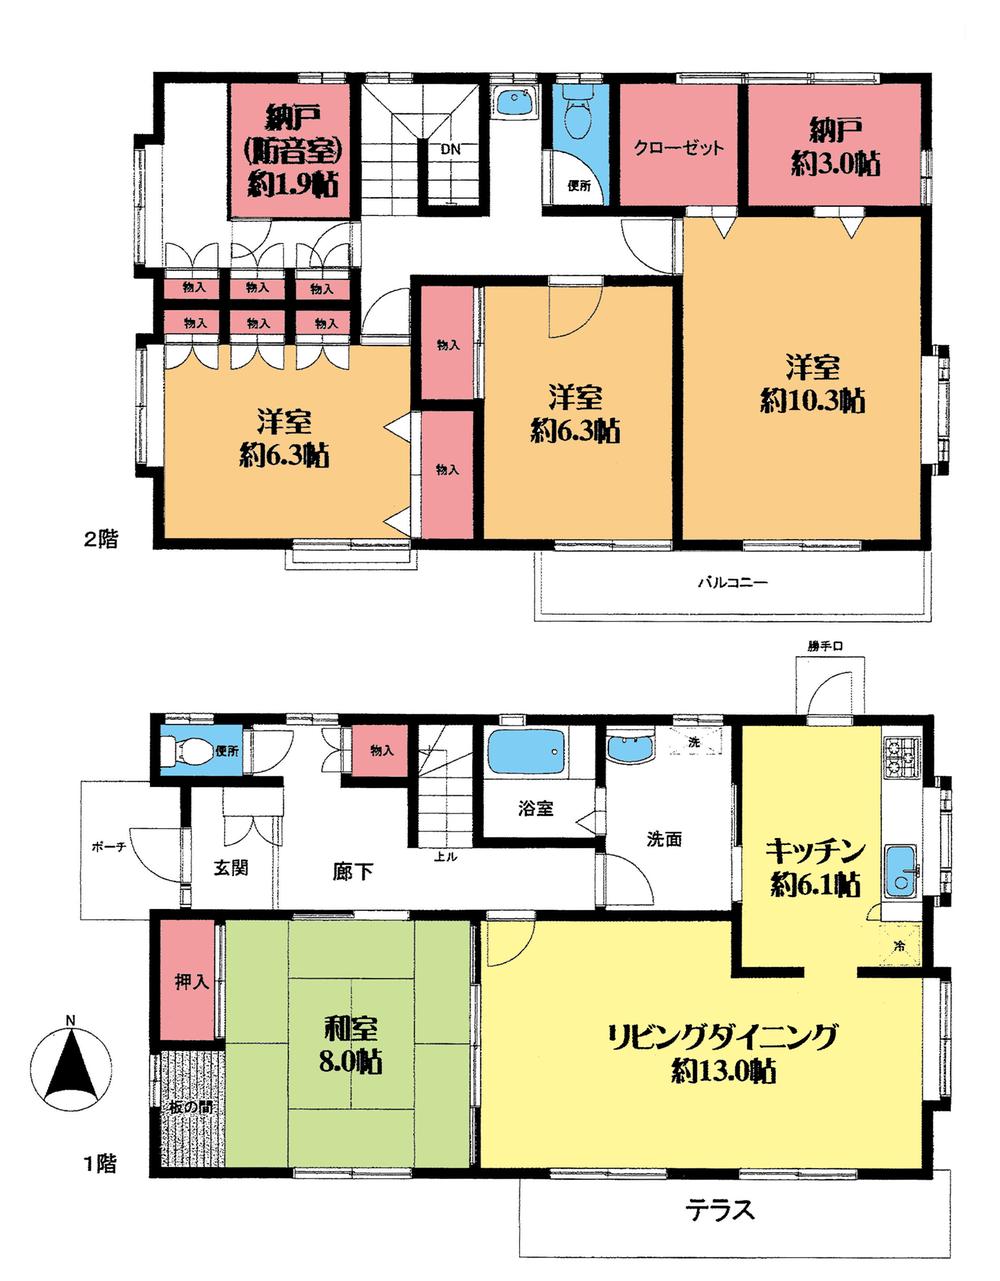 Floor plan. 18,800,000 yen, 4LDK + 2S (storeroom), Land area 184.59 sq m , Building area 144.54 sq m floor plan